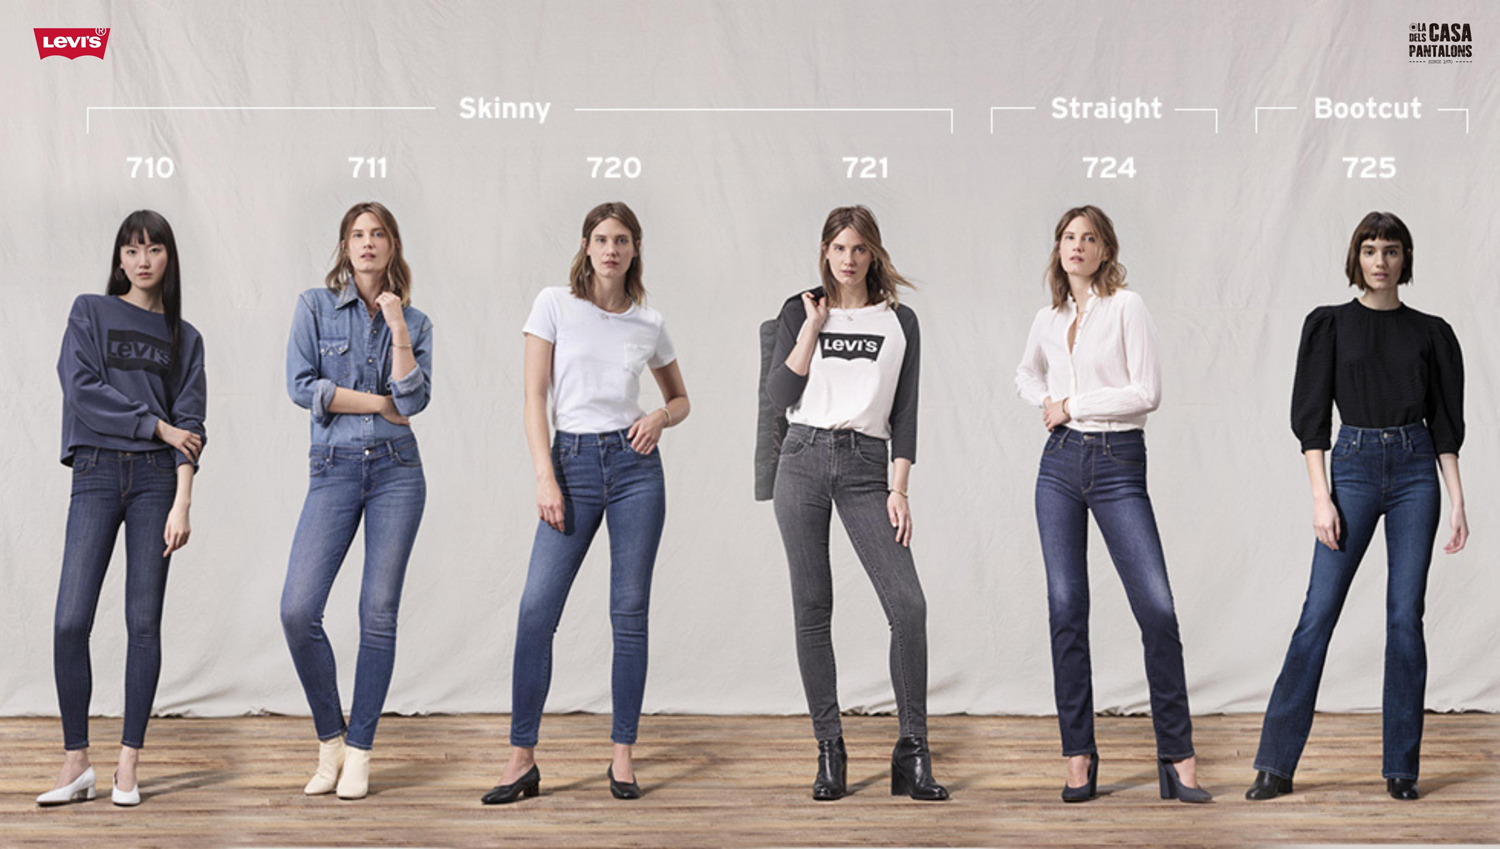  Levi's - Jeans de mujer súper ajustados de tiro alto